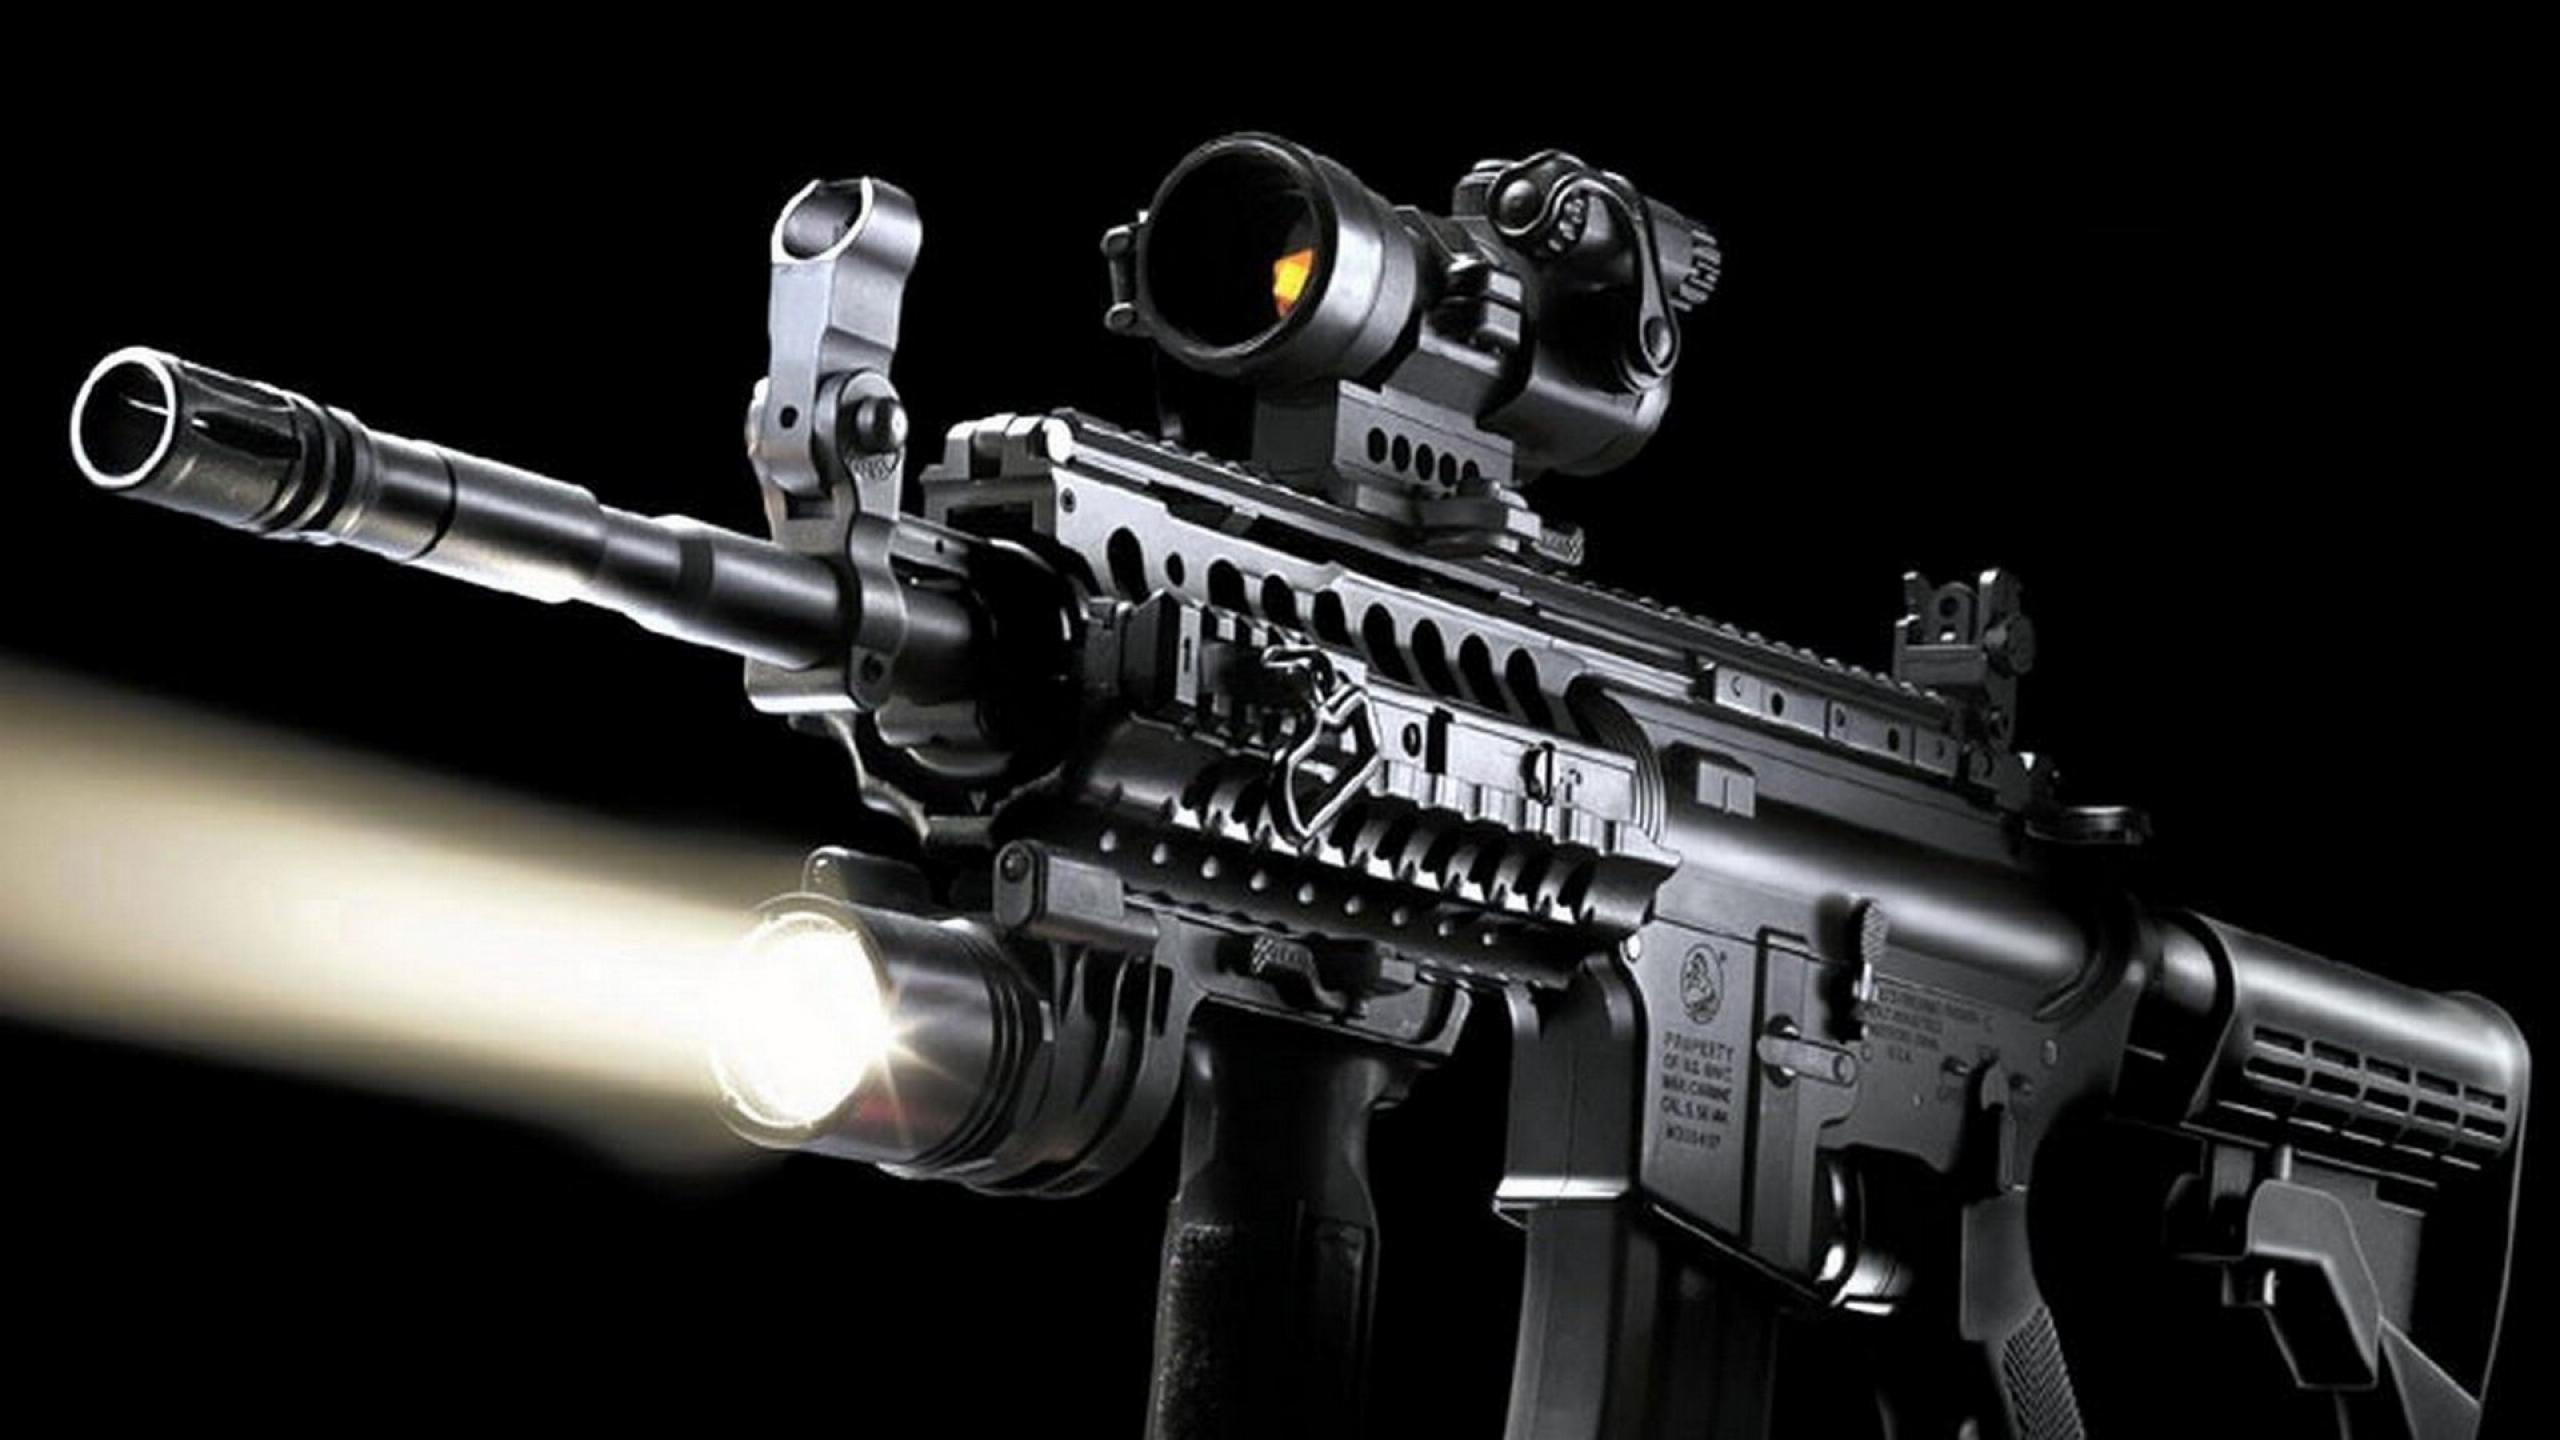 Feuerwaffe, Trigger, Gewehr, STURMGEWEHR, Gun Barrel. Wallpaper in 2560x1440 Resolution